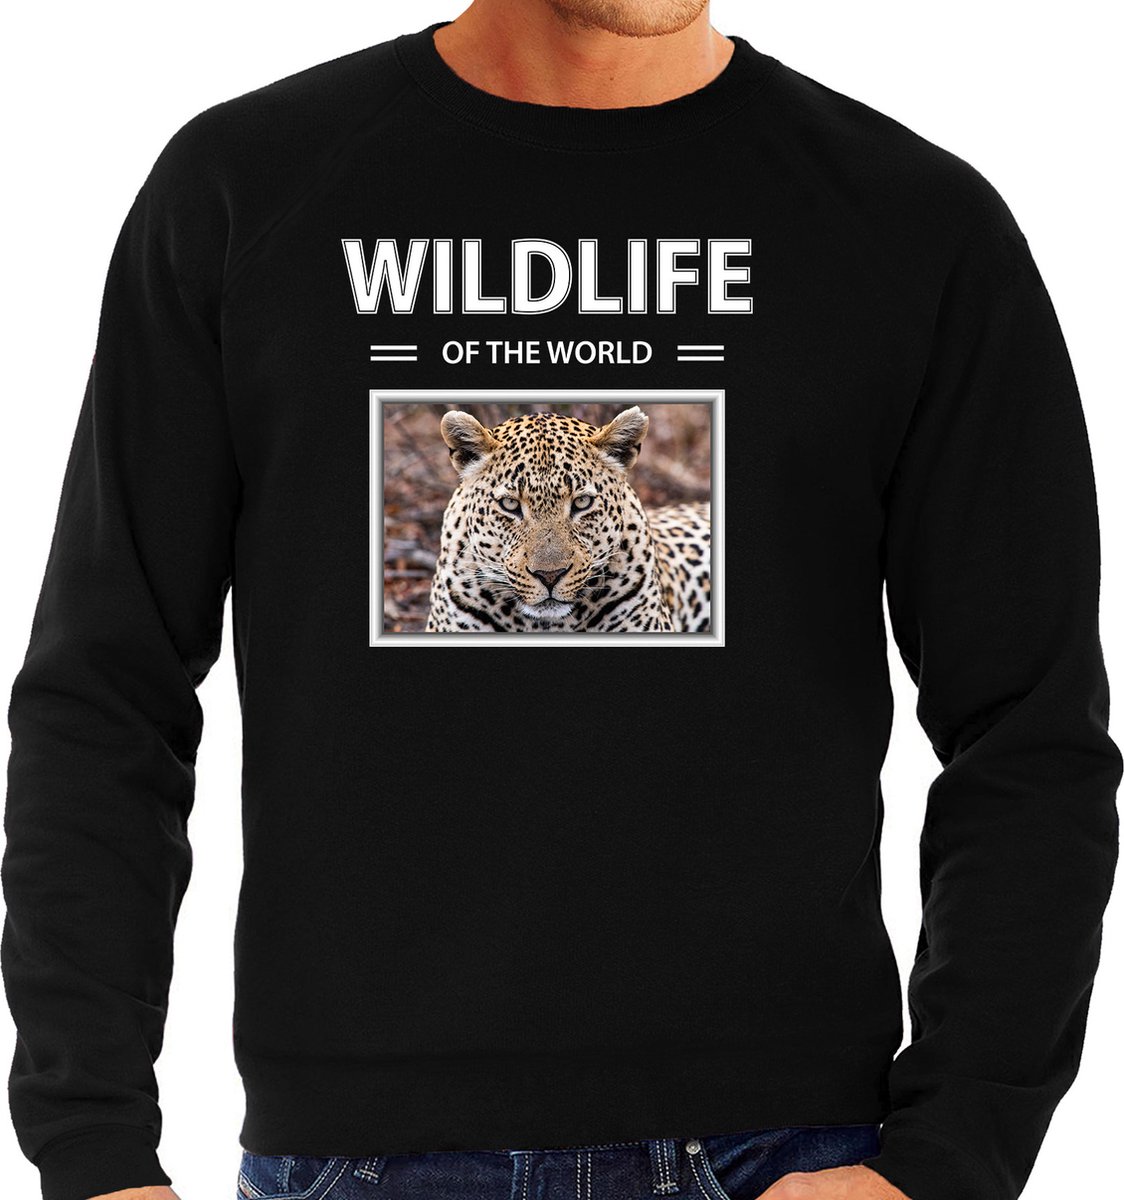 Dieren foto sweater Jaguar - zwart - heren - wildlife of the world - cadeau trui Jaguars liefhebber XL